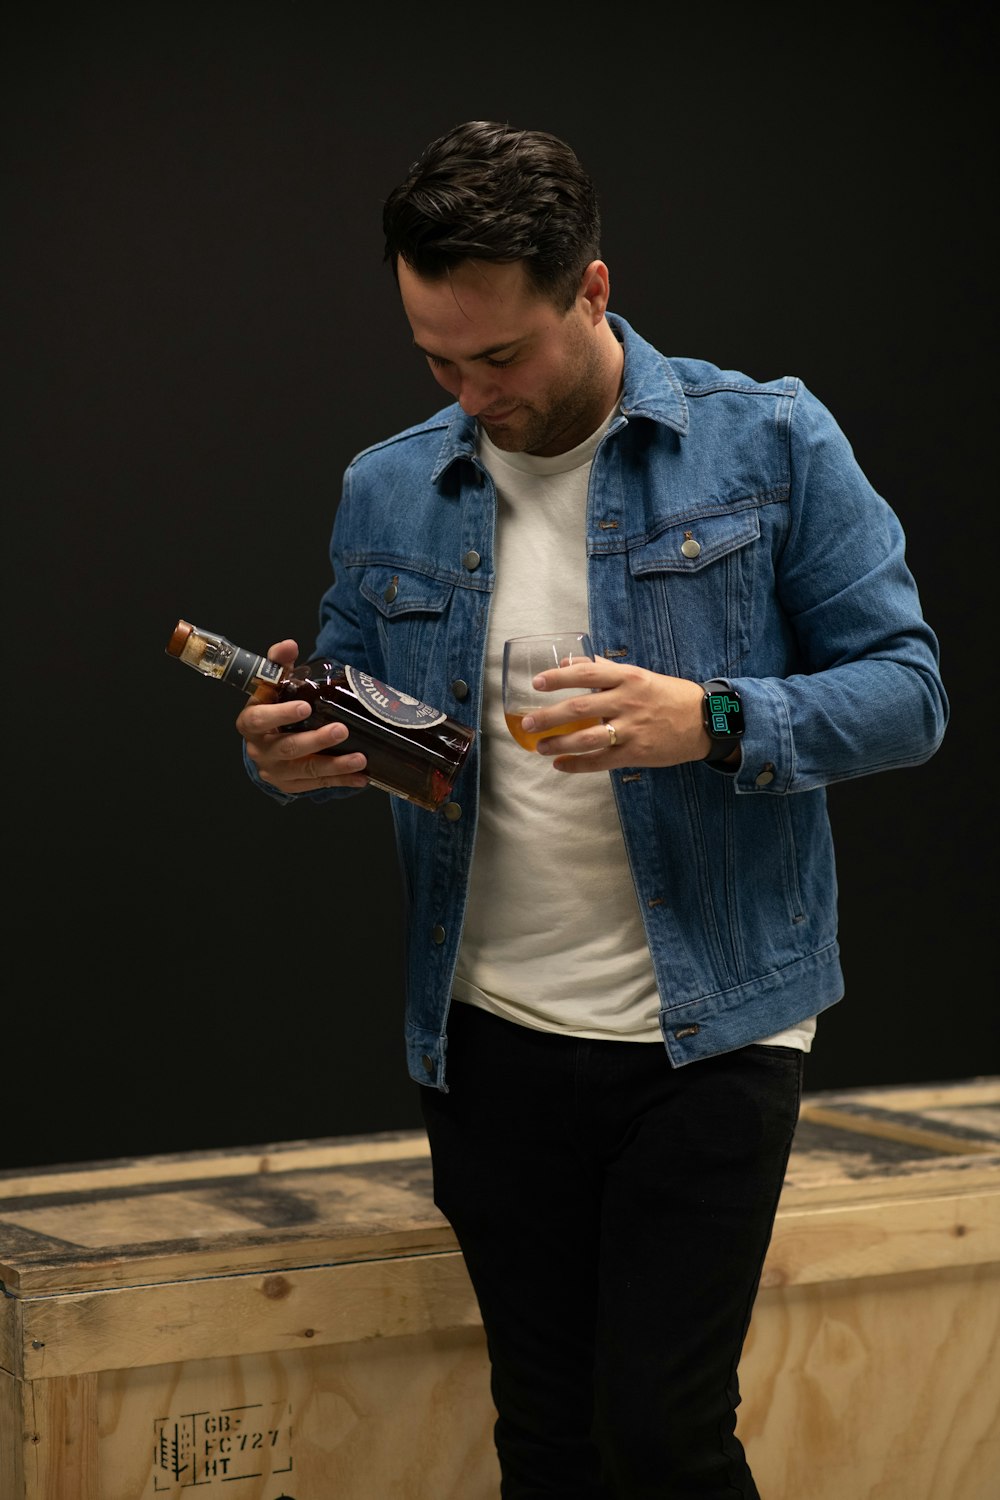 homem na jaqueta jeans azul segurando o smartphone